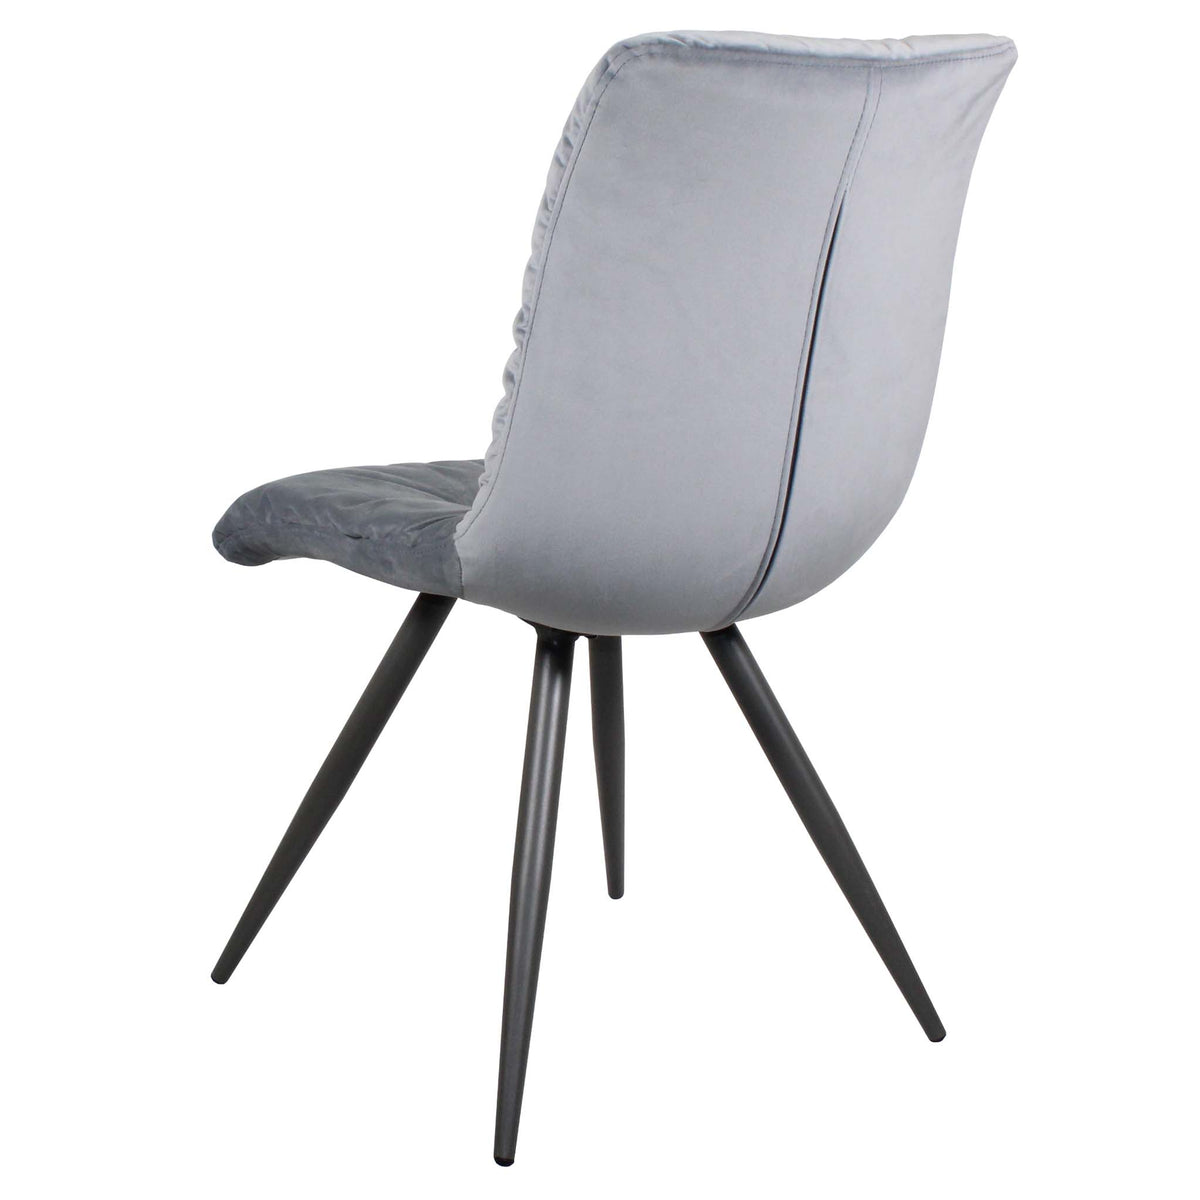 Back of the Light Grey Addison Velvet Chair from Roseland Furniture